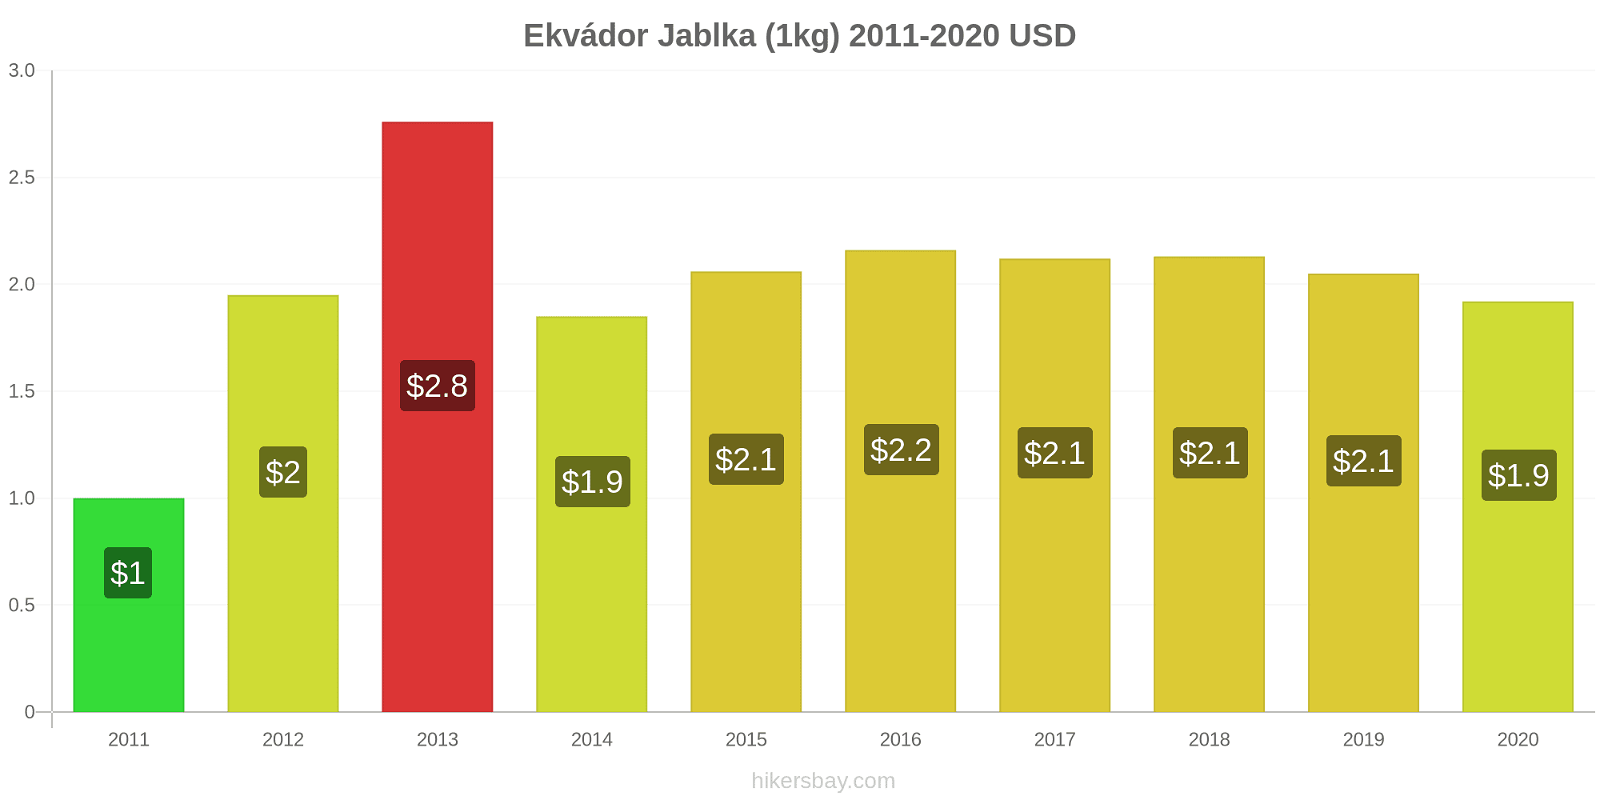 Ekvádor změny cen Jablka (1kg) hikersbay.com